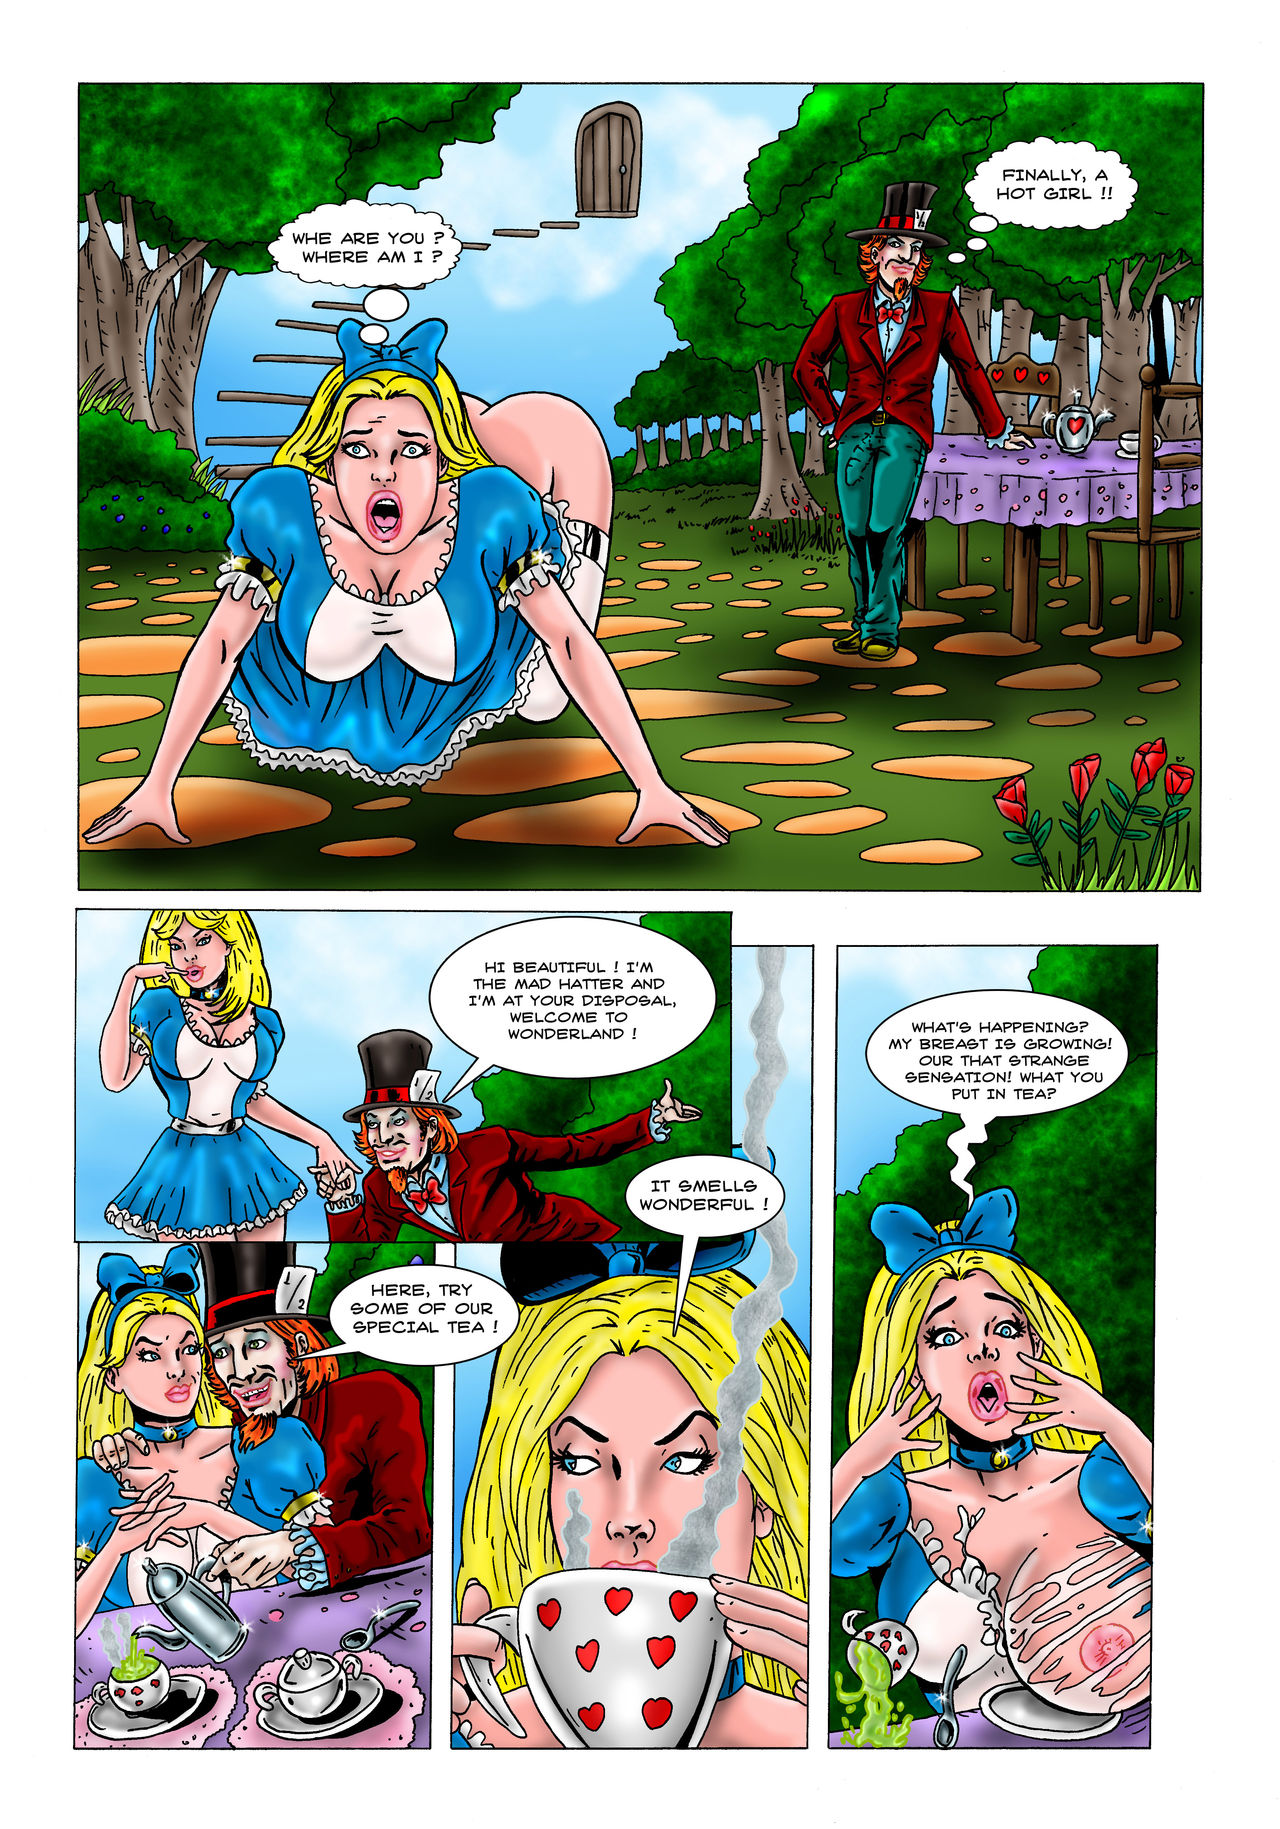 Disney Alice In Wonderland Porn Comic - Alice In Wonderland Breast Expansion Bondage | BDSM Fetish